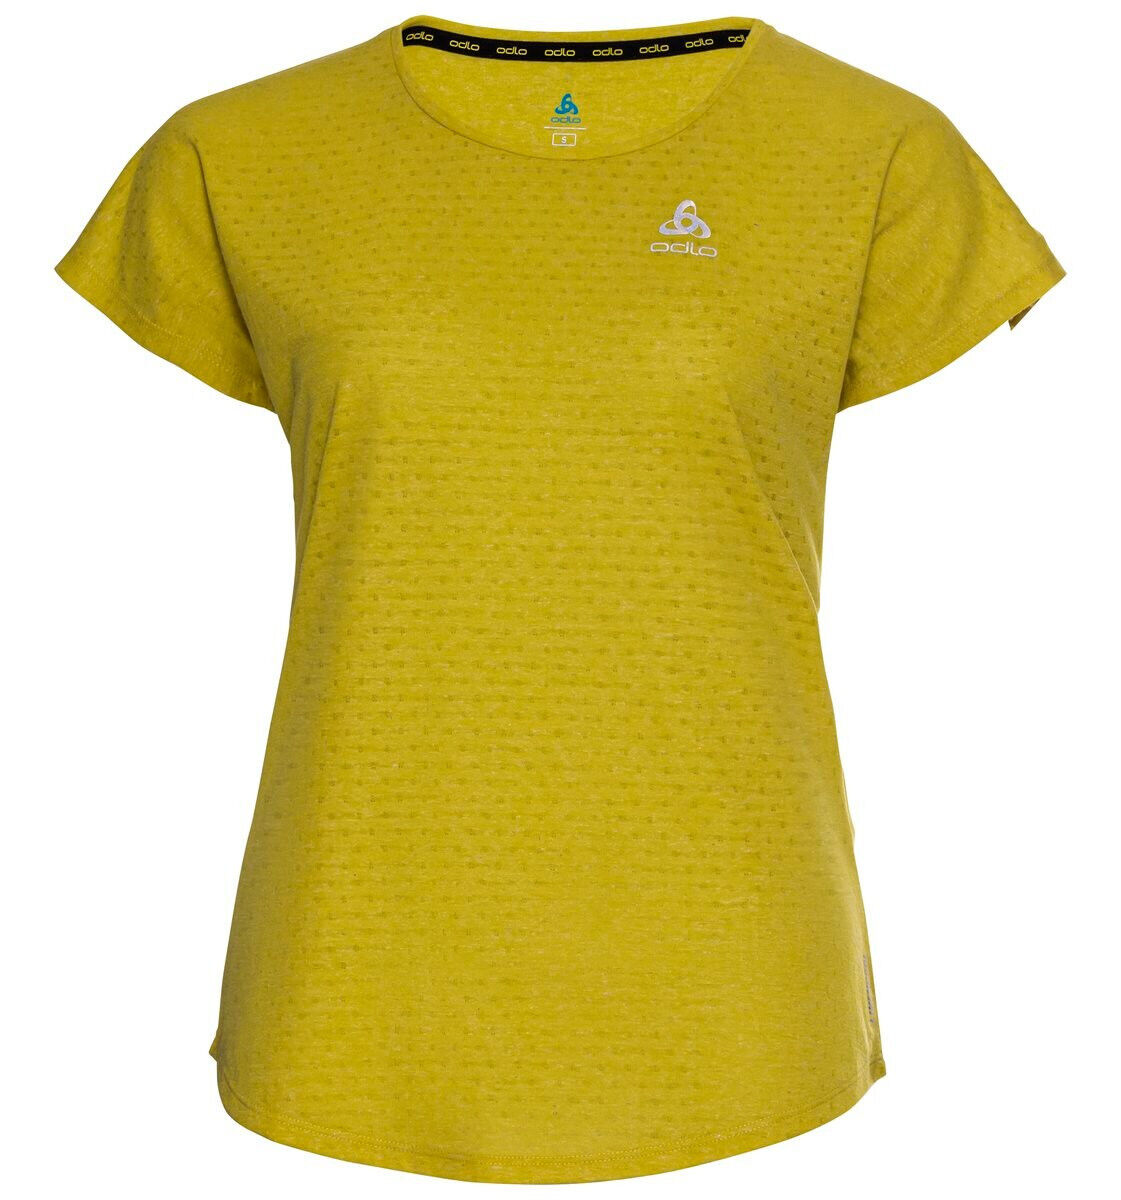 Odlo - Millennium Linencool - T-shirt - Women's